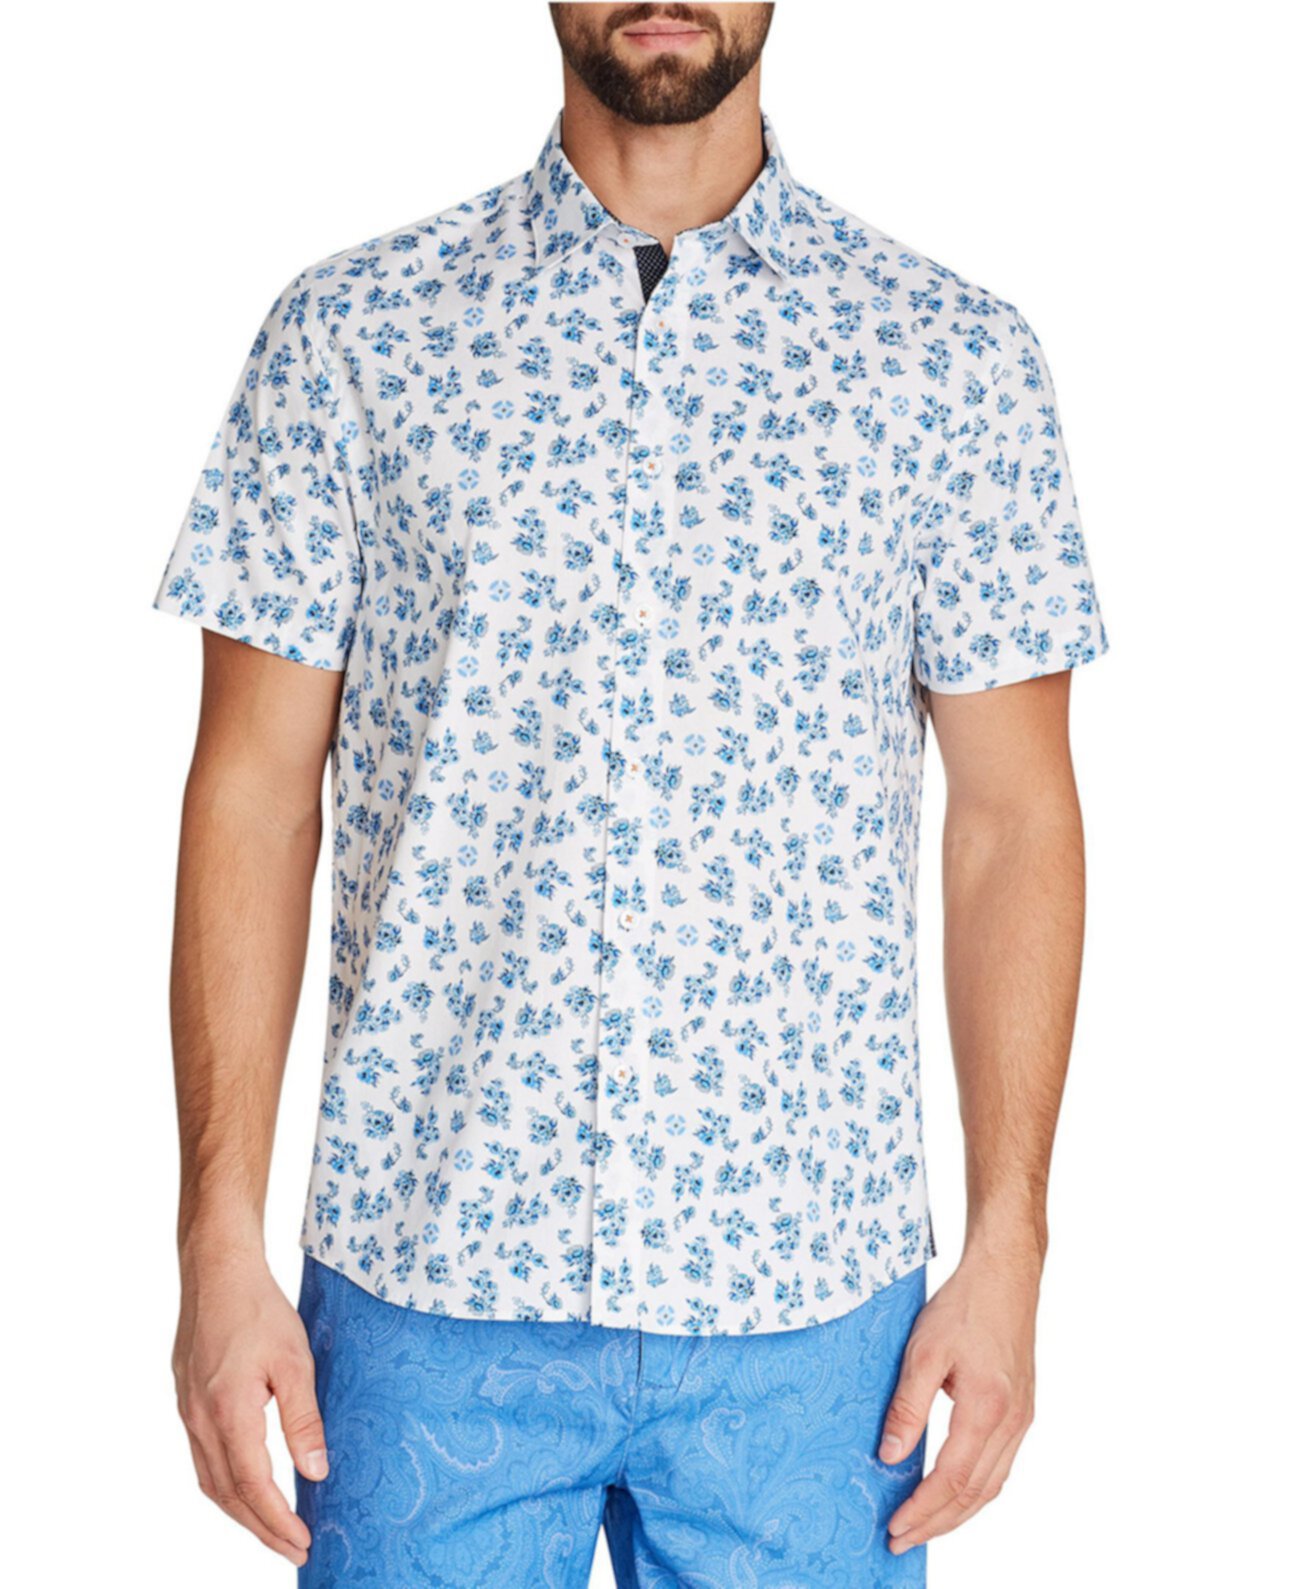 Мужская приталенная рубашка с коротким рукавом с цветочным рисунком и бесплатная маска для лица при покупке Tallia